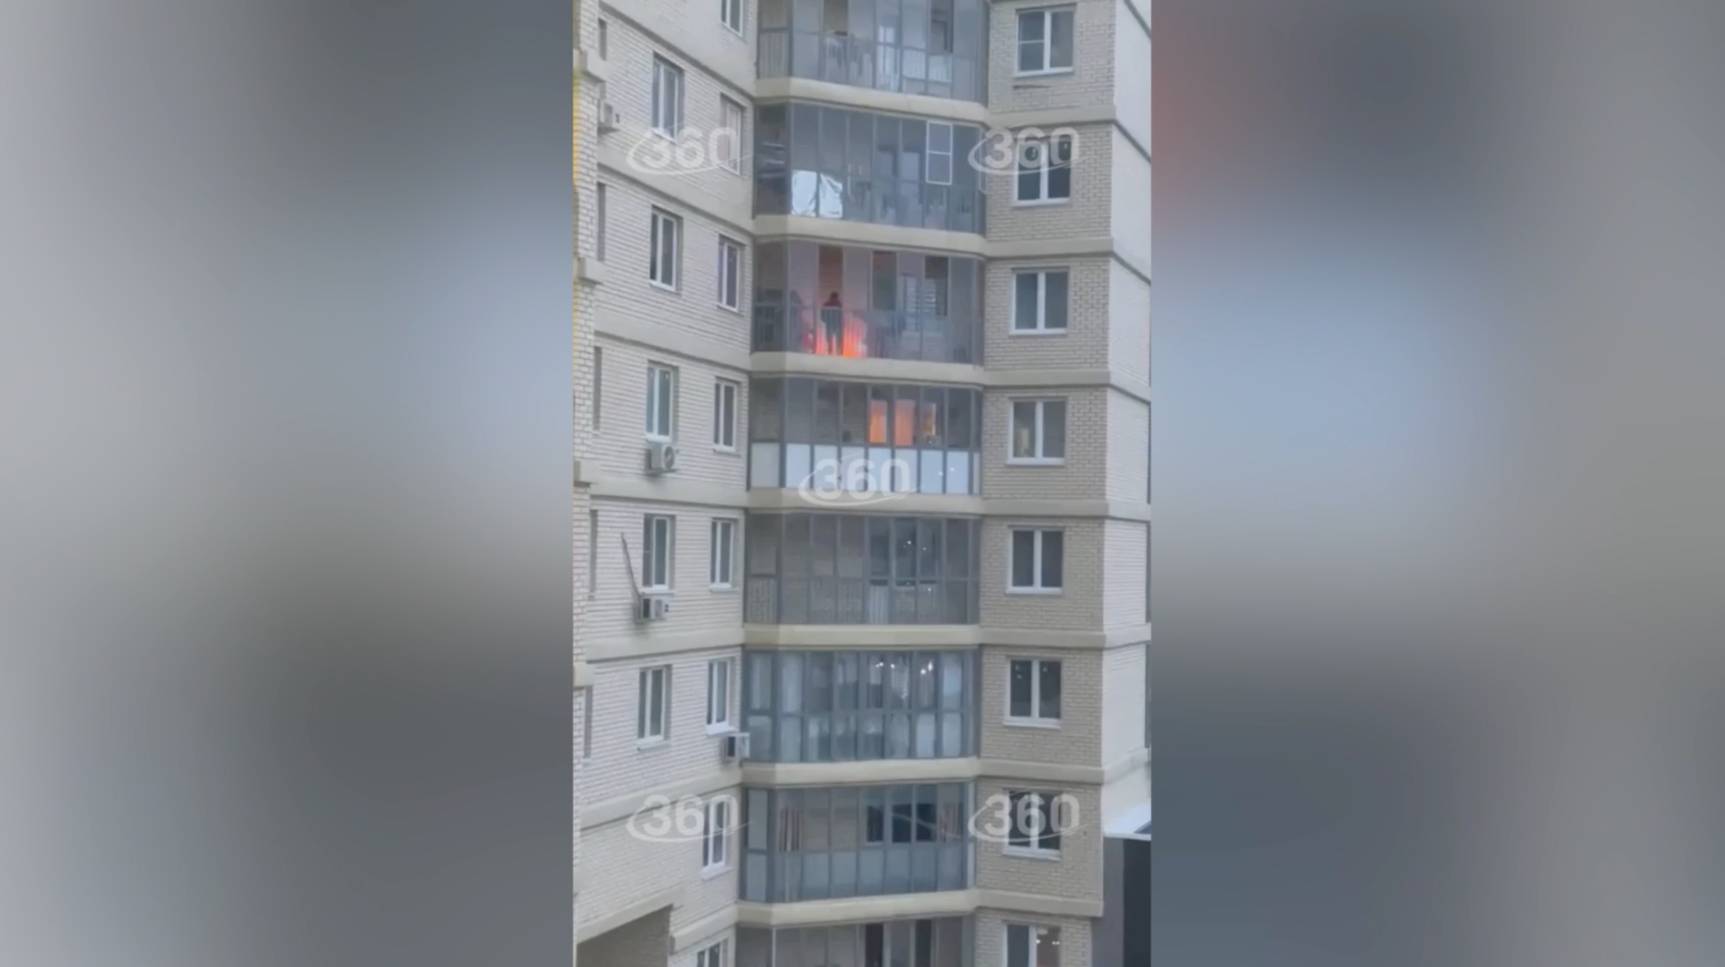 Москвич кошмарит соседей пьяными оргиями, громкой музыкой и шашлыками на балконе